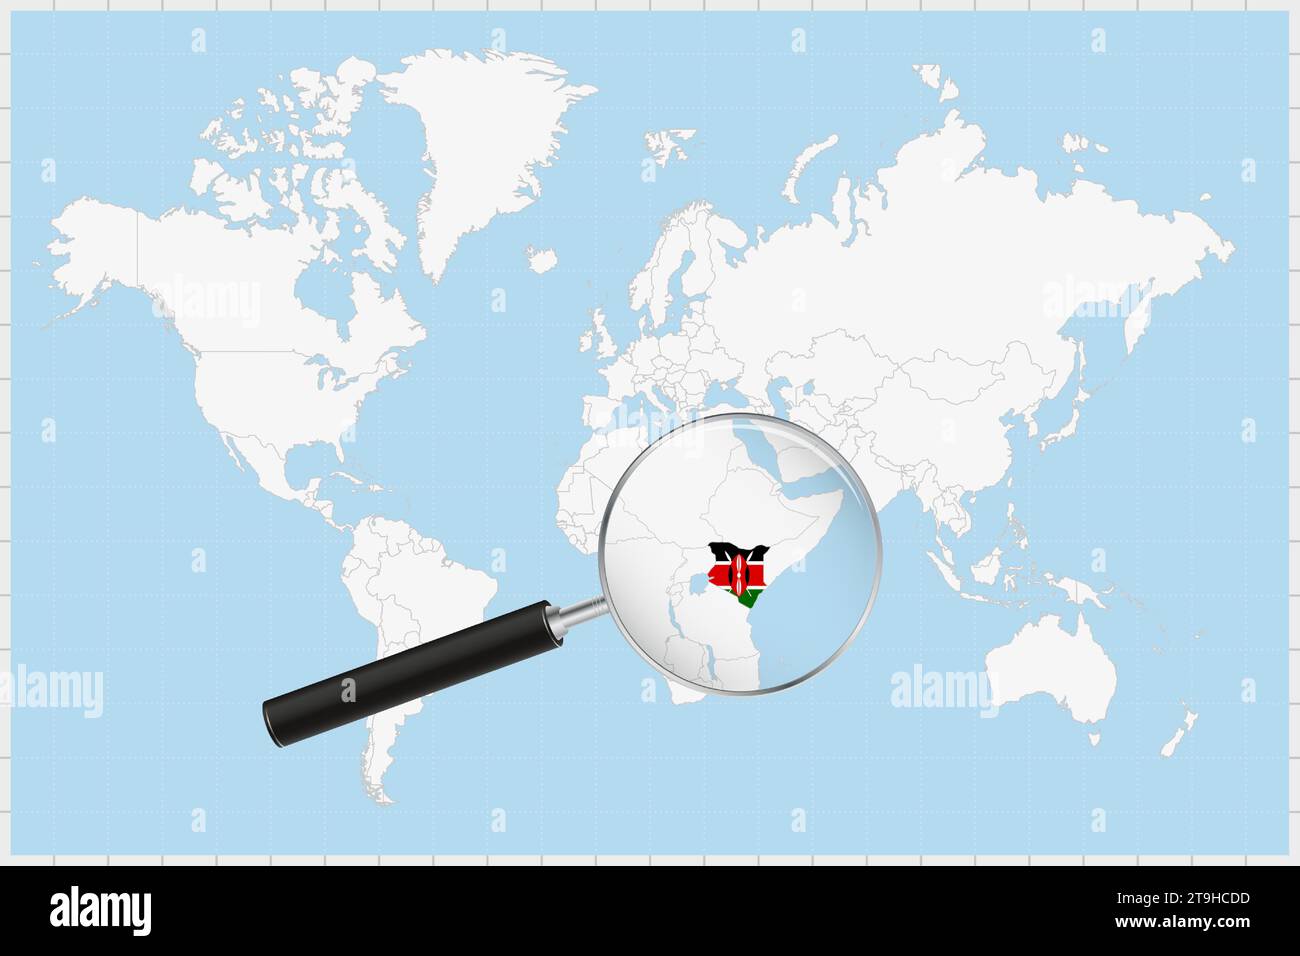 Loupe montrant une carte du Kenya sur une carte du monde. Le drapeau et la carte du Kenya s'agrandissent dans l'objectif. Illustration vectorielle. Illustration de Vecteur